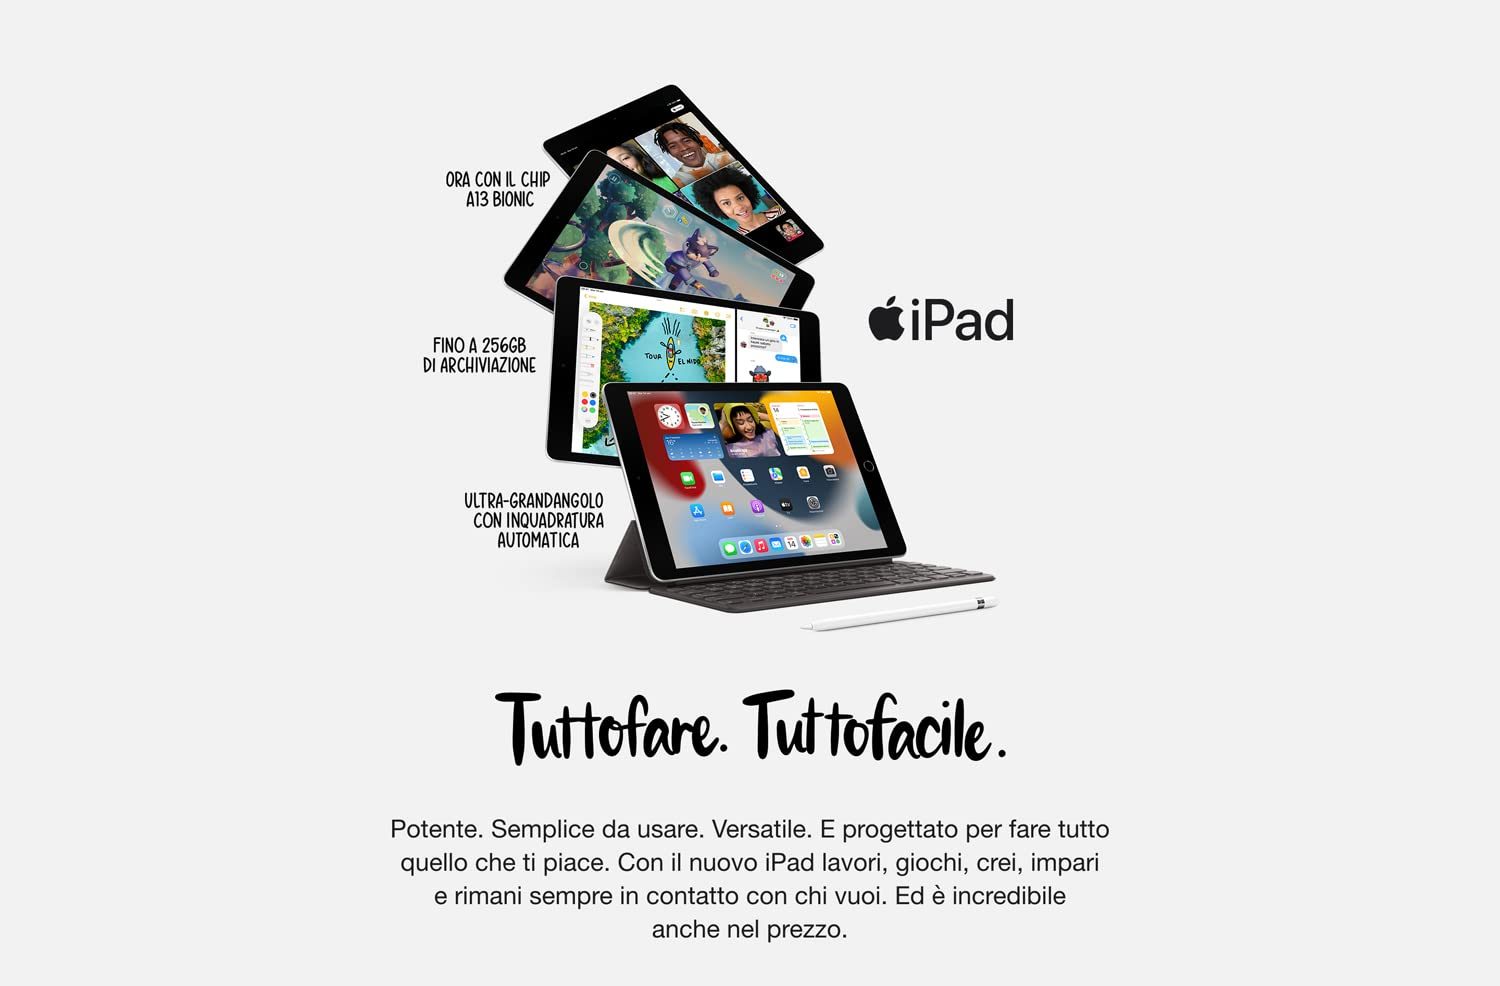 iPad 2021